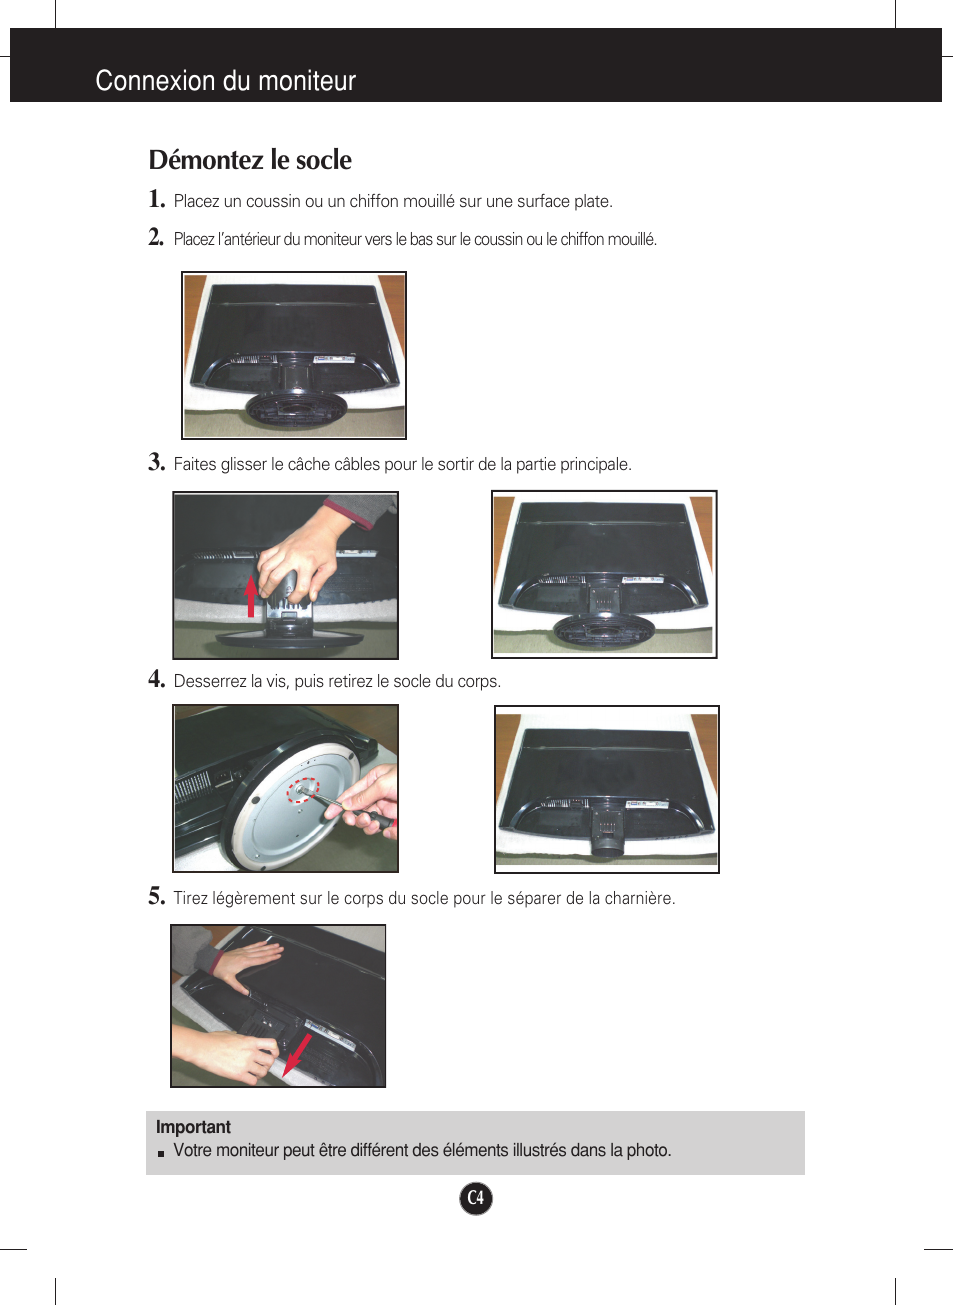 Démontez le socle, Connexion du moniteur démontez le socle | LG W2452V-PF Manuel d'utilisation | Page 5 / 27